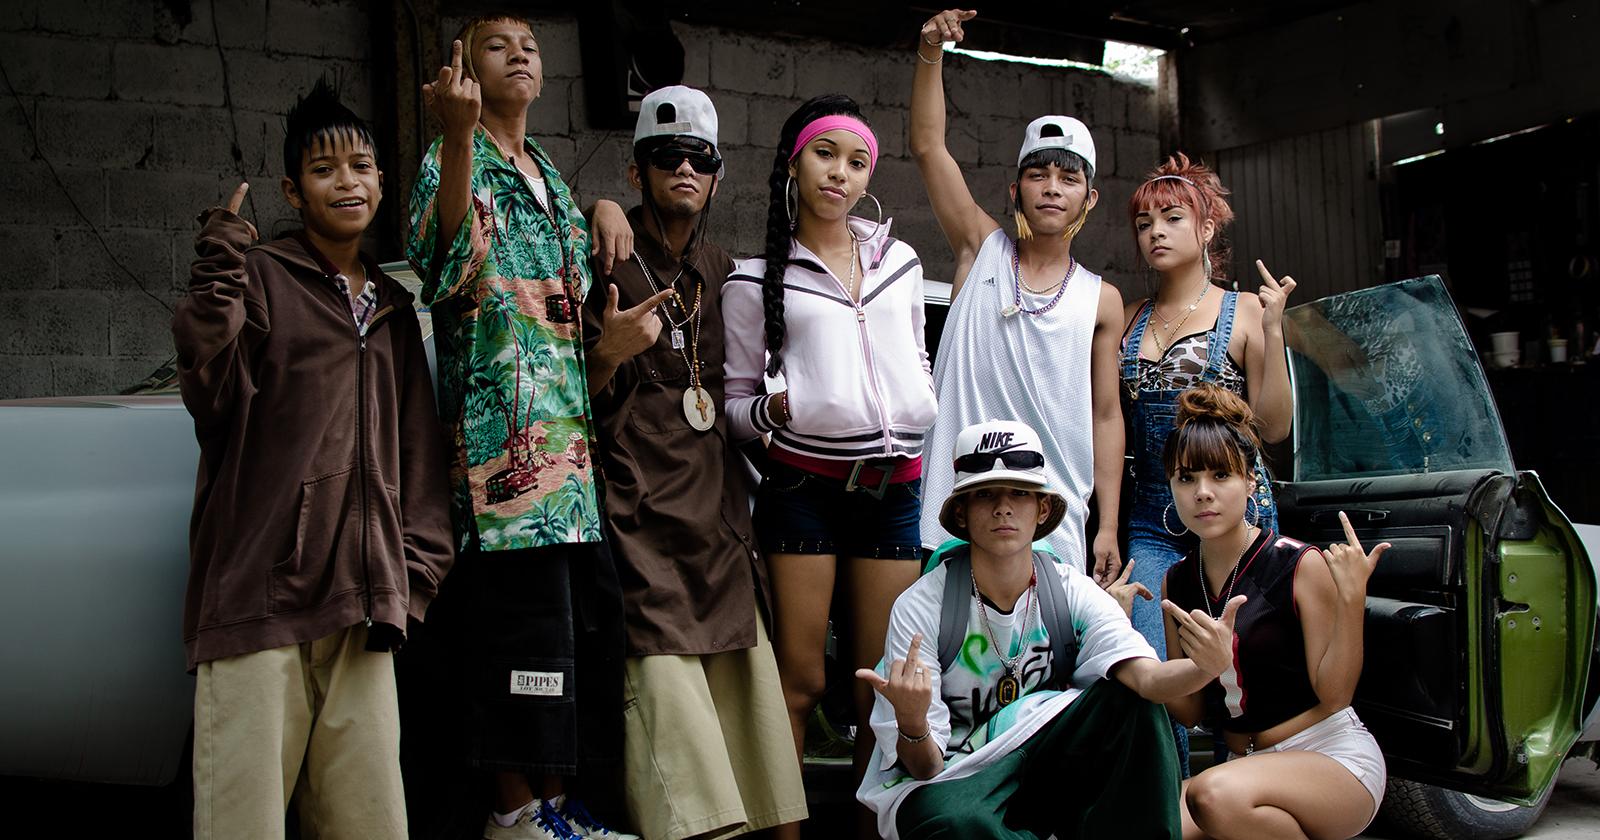 Grupo de ocho jóvenes caracterizados con la estética característica de los Kolombia. Peinados extravagantes y vestimentas coloridas y holgadas.